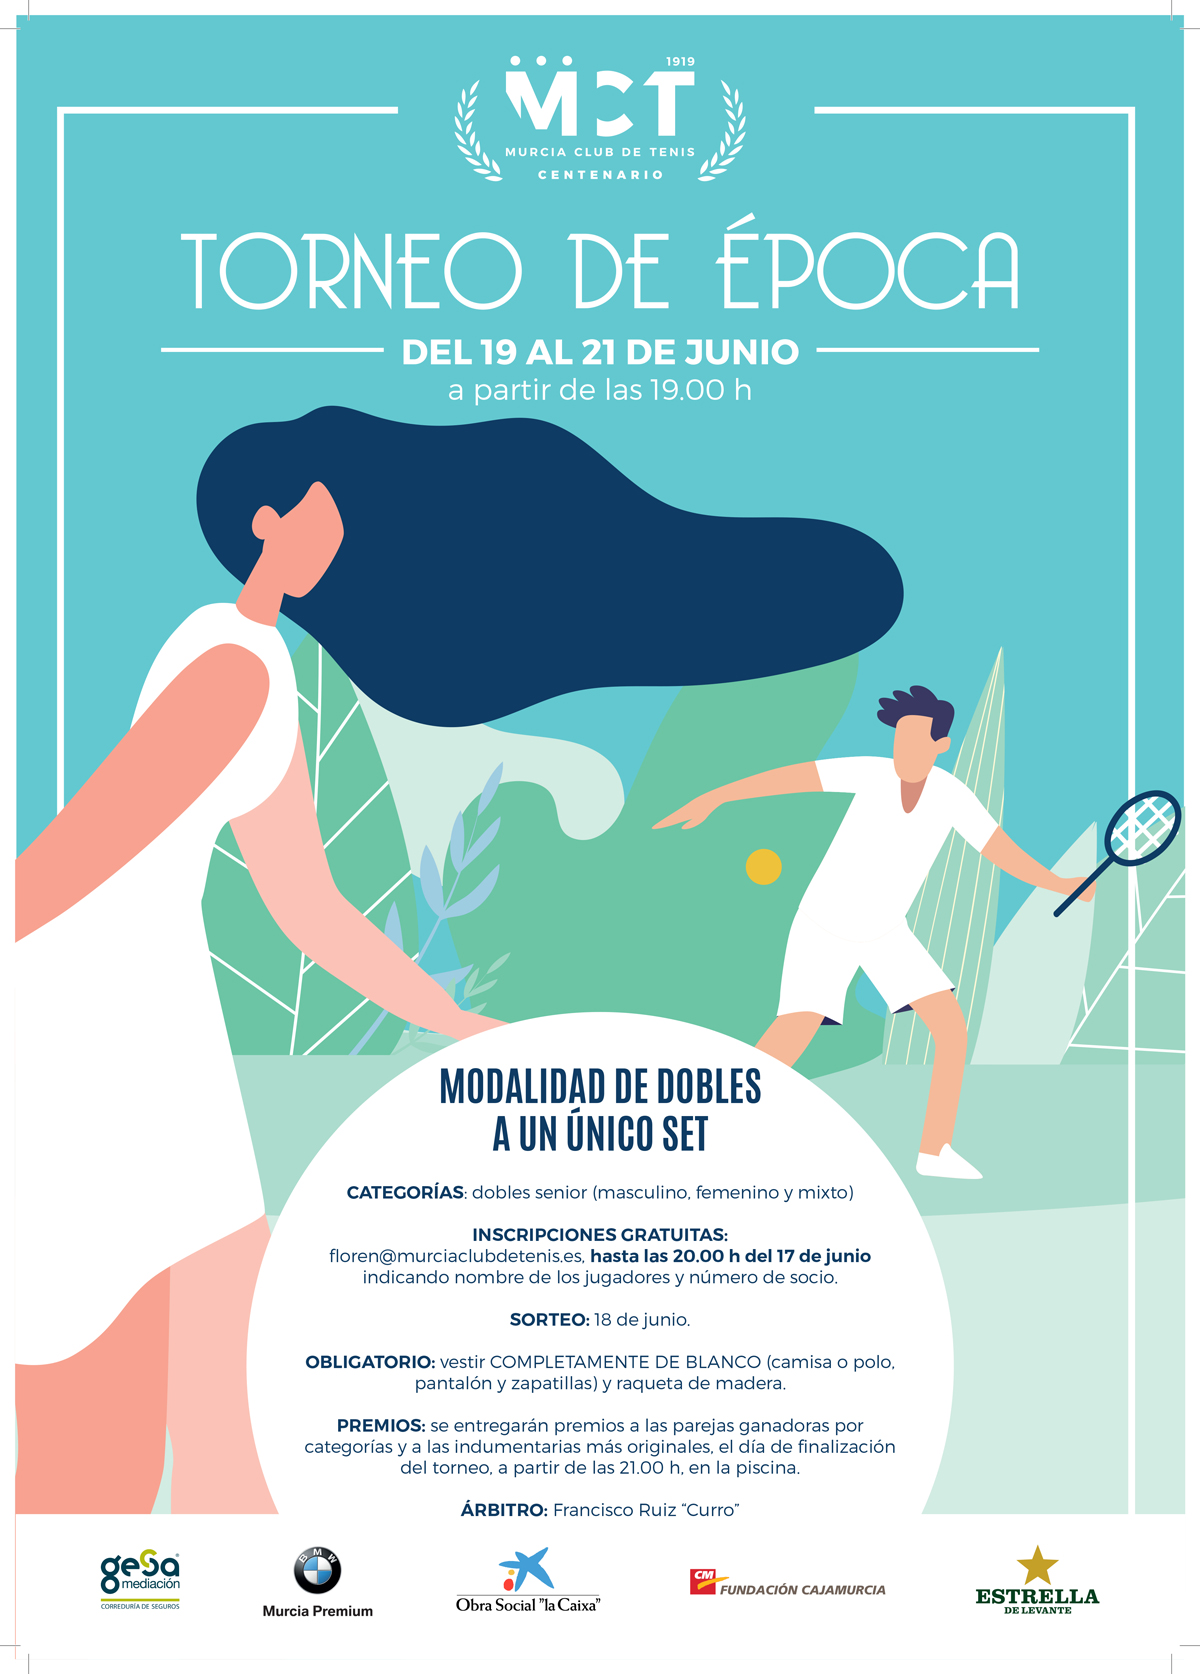 Torneo de Época — Lista de Inscritos y Orden de Juego – Murcia Club de Tenis